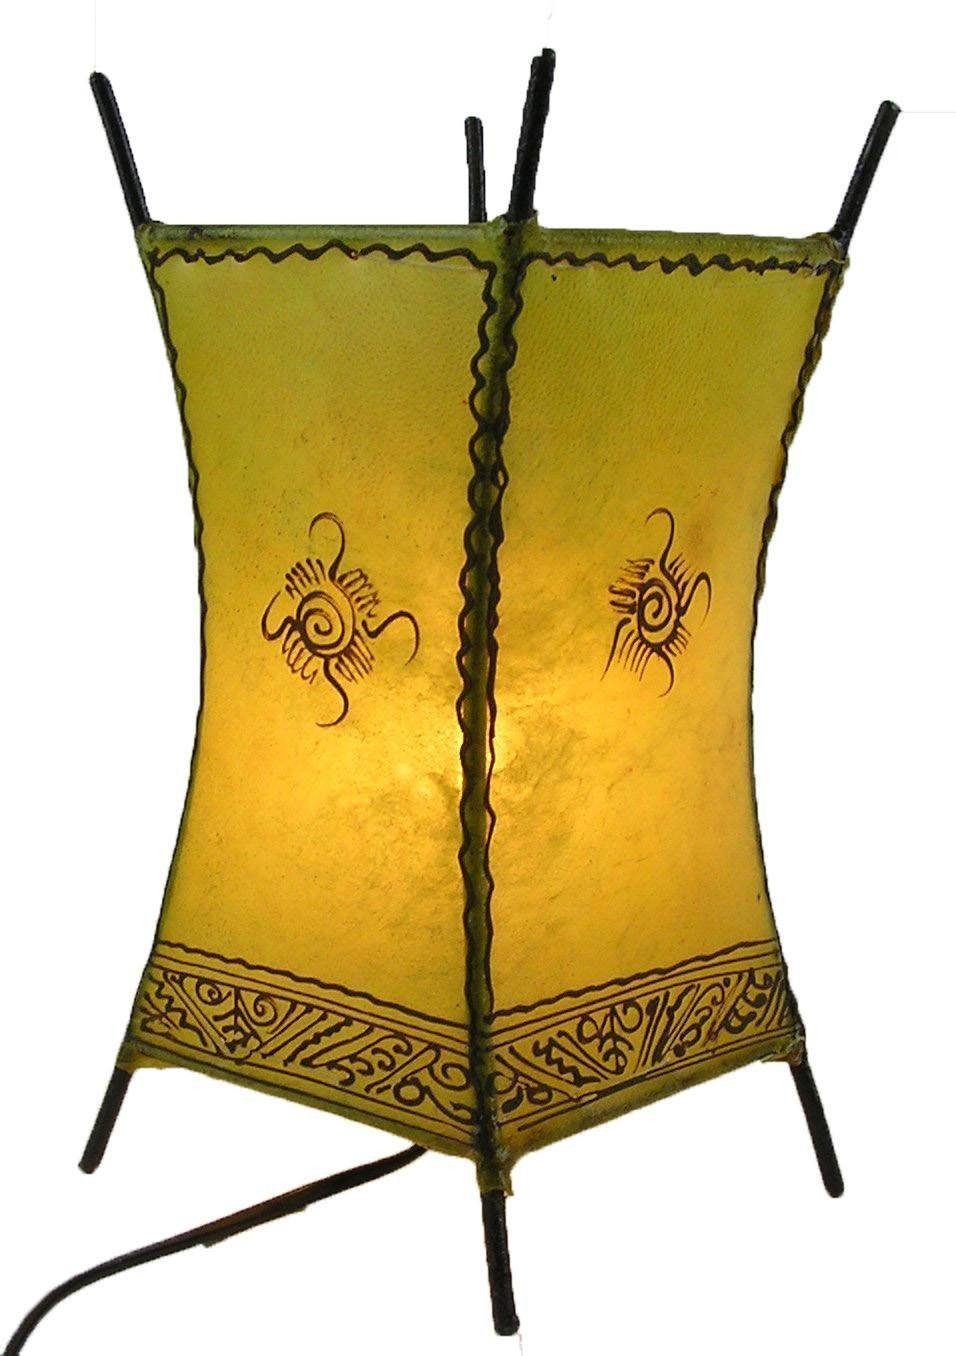 Ambilight, Warmweiß, SIMANDRA Carree Sonne, ohne marokkanische Leuchtmittel, Lederlampe Stehlampe Gelb